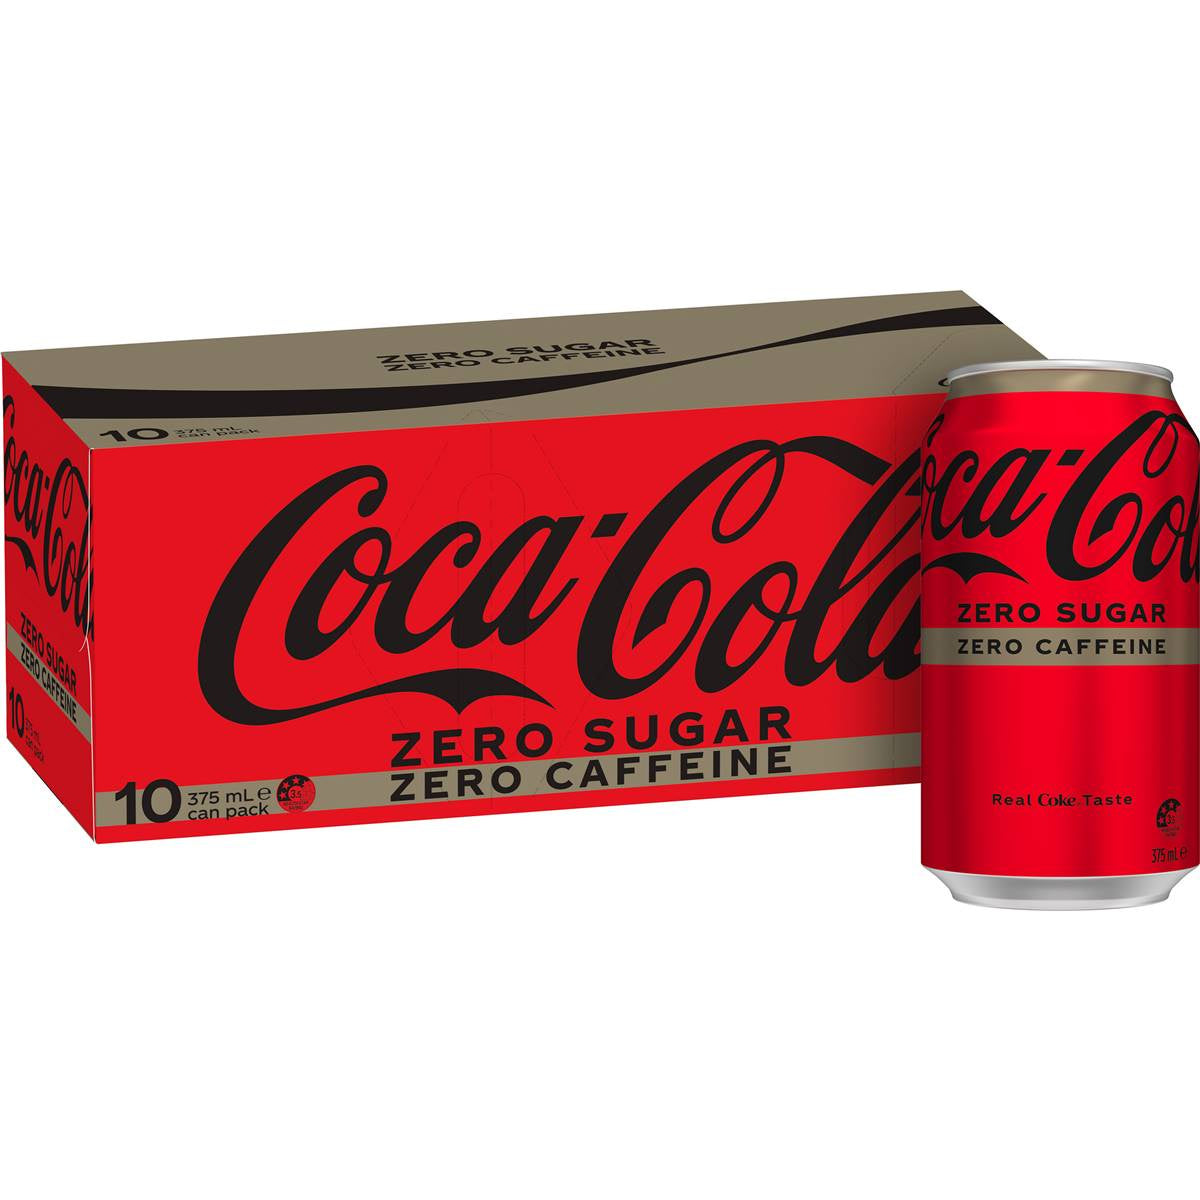 Coca Cola Zero Sugar Zero Caffeine Cans 10x375ml